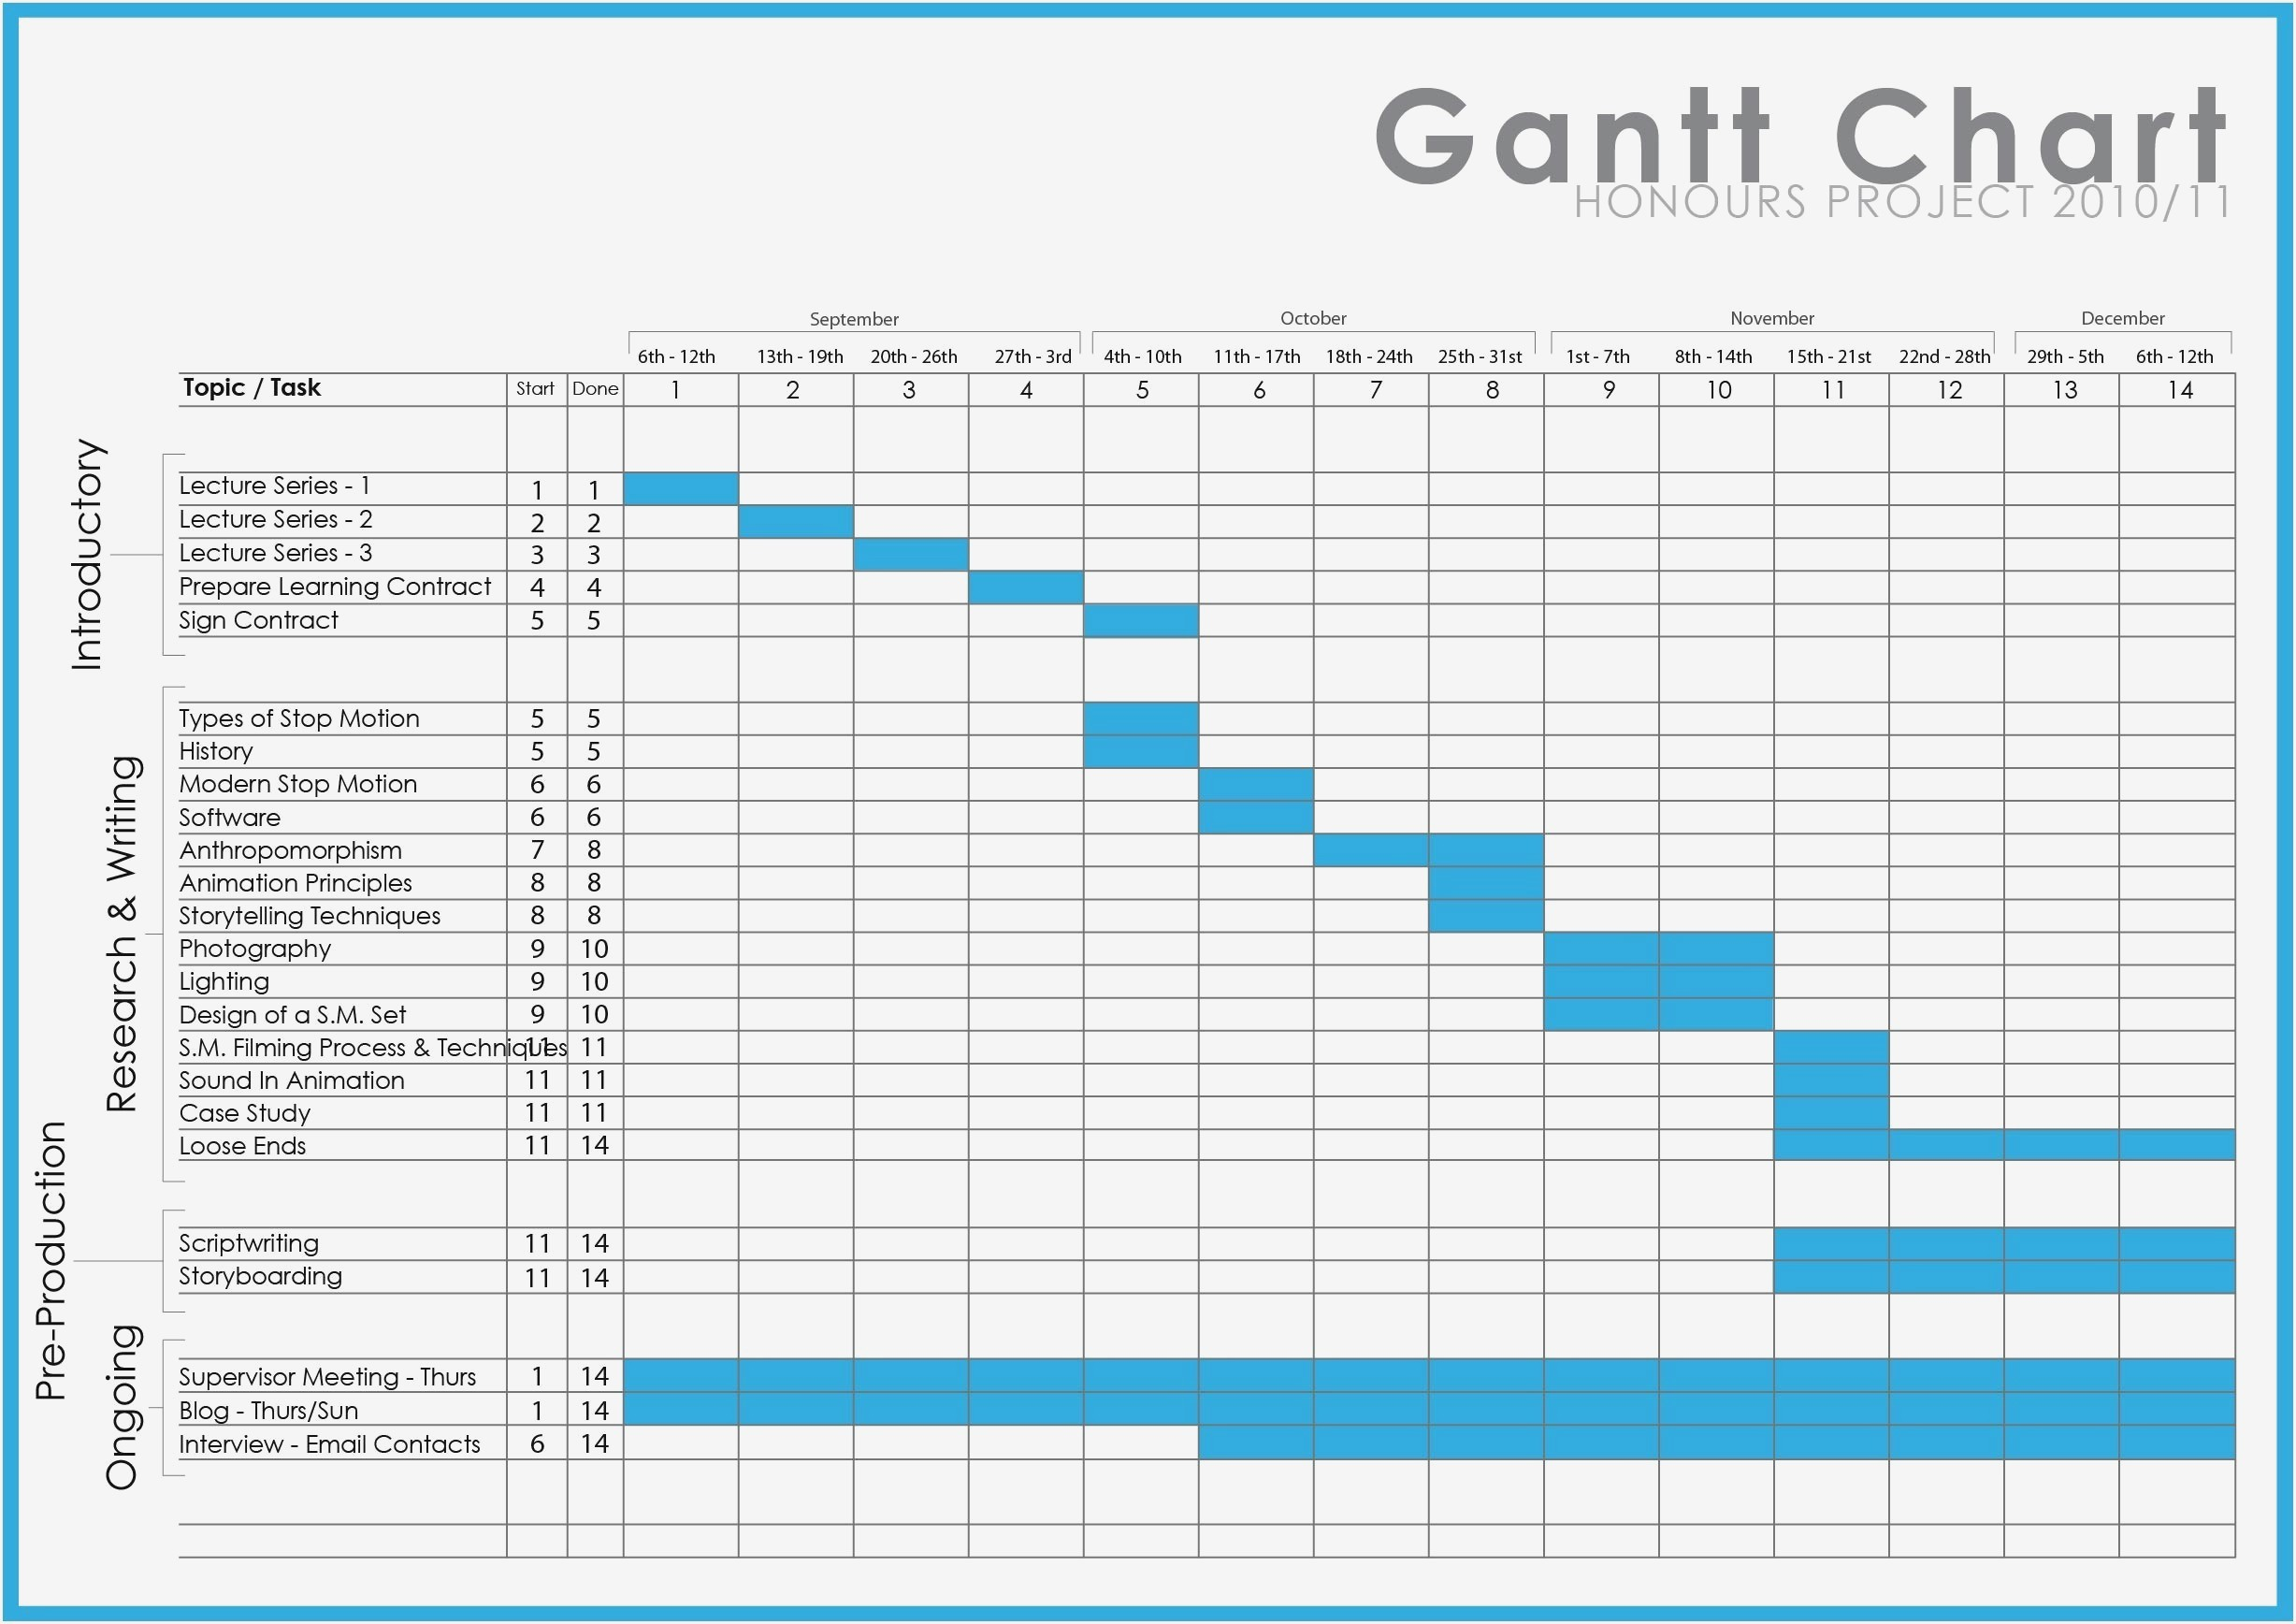 Gantt Chart Word Template Business Templates Microsoft Office For Throughout Gantt Chart Template Microsoft Word